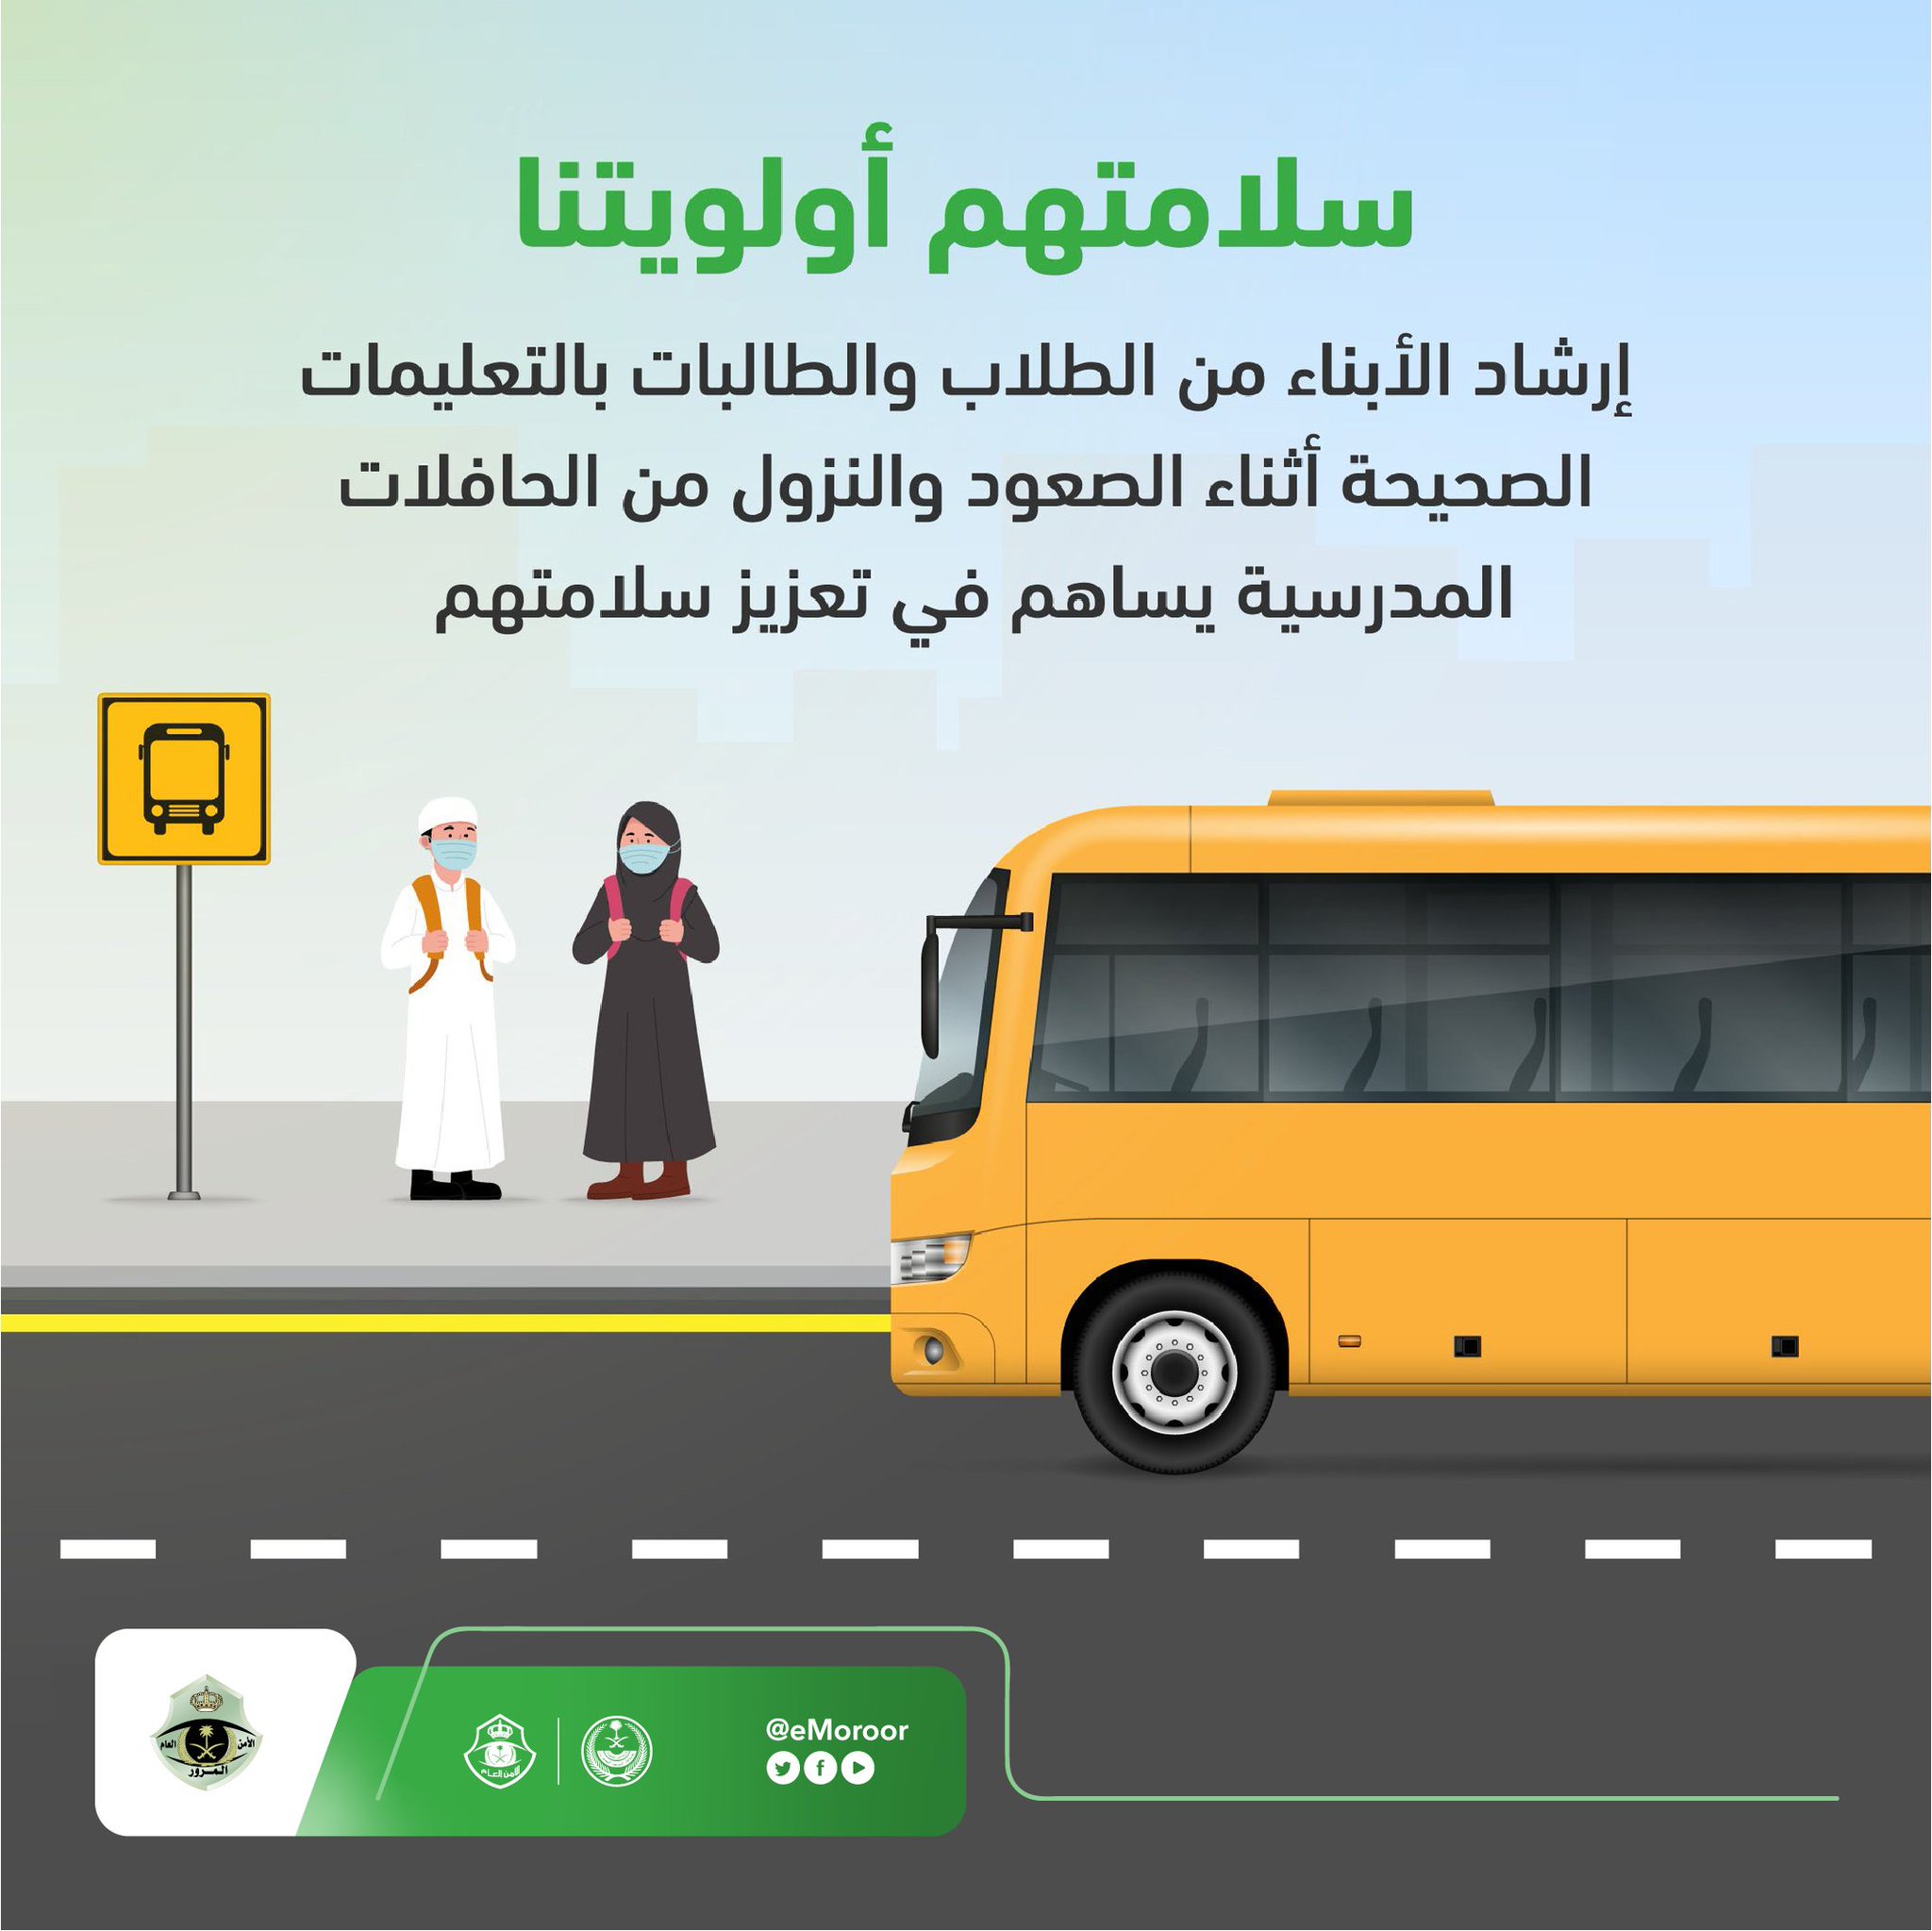 المرور السعودي تُصدر بعض الإرشادات للطلاب والطالبات وأولياء أمورهم بمناسبة عودة الدراسة